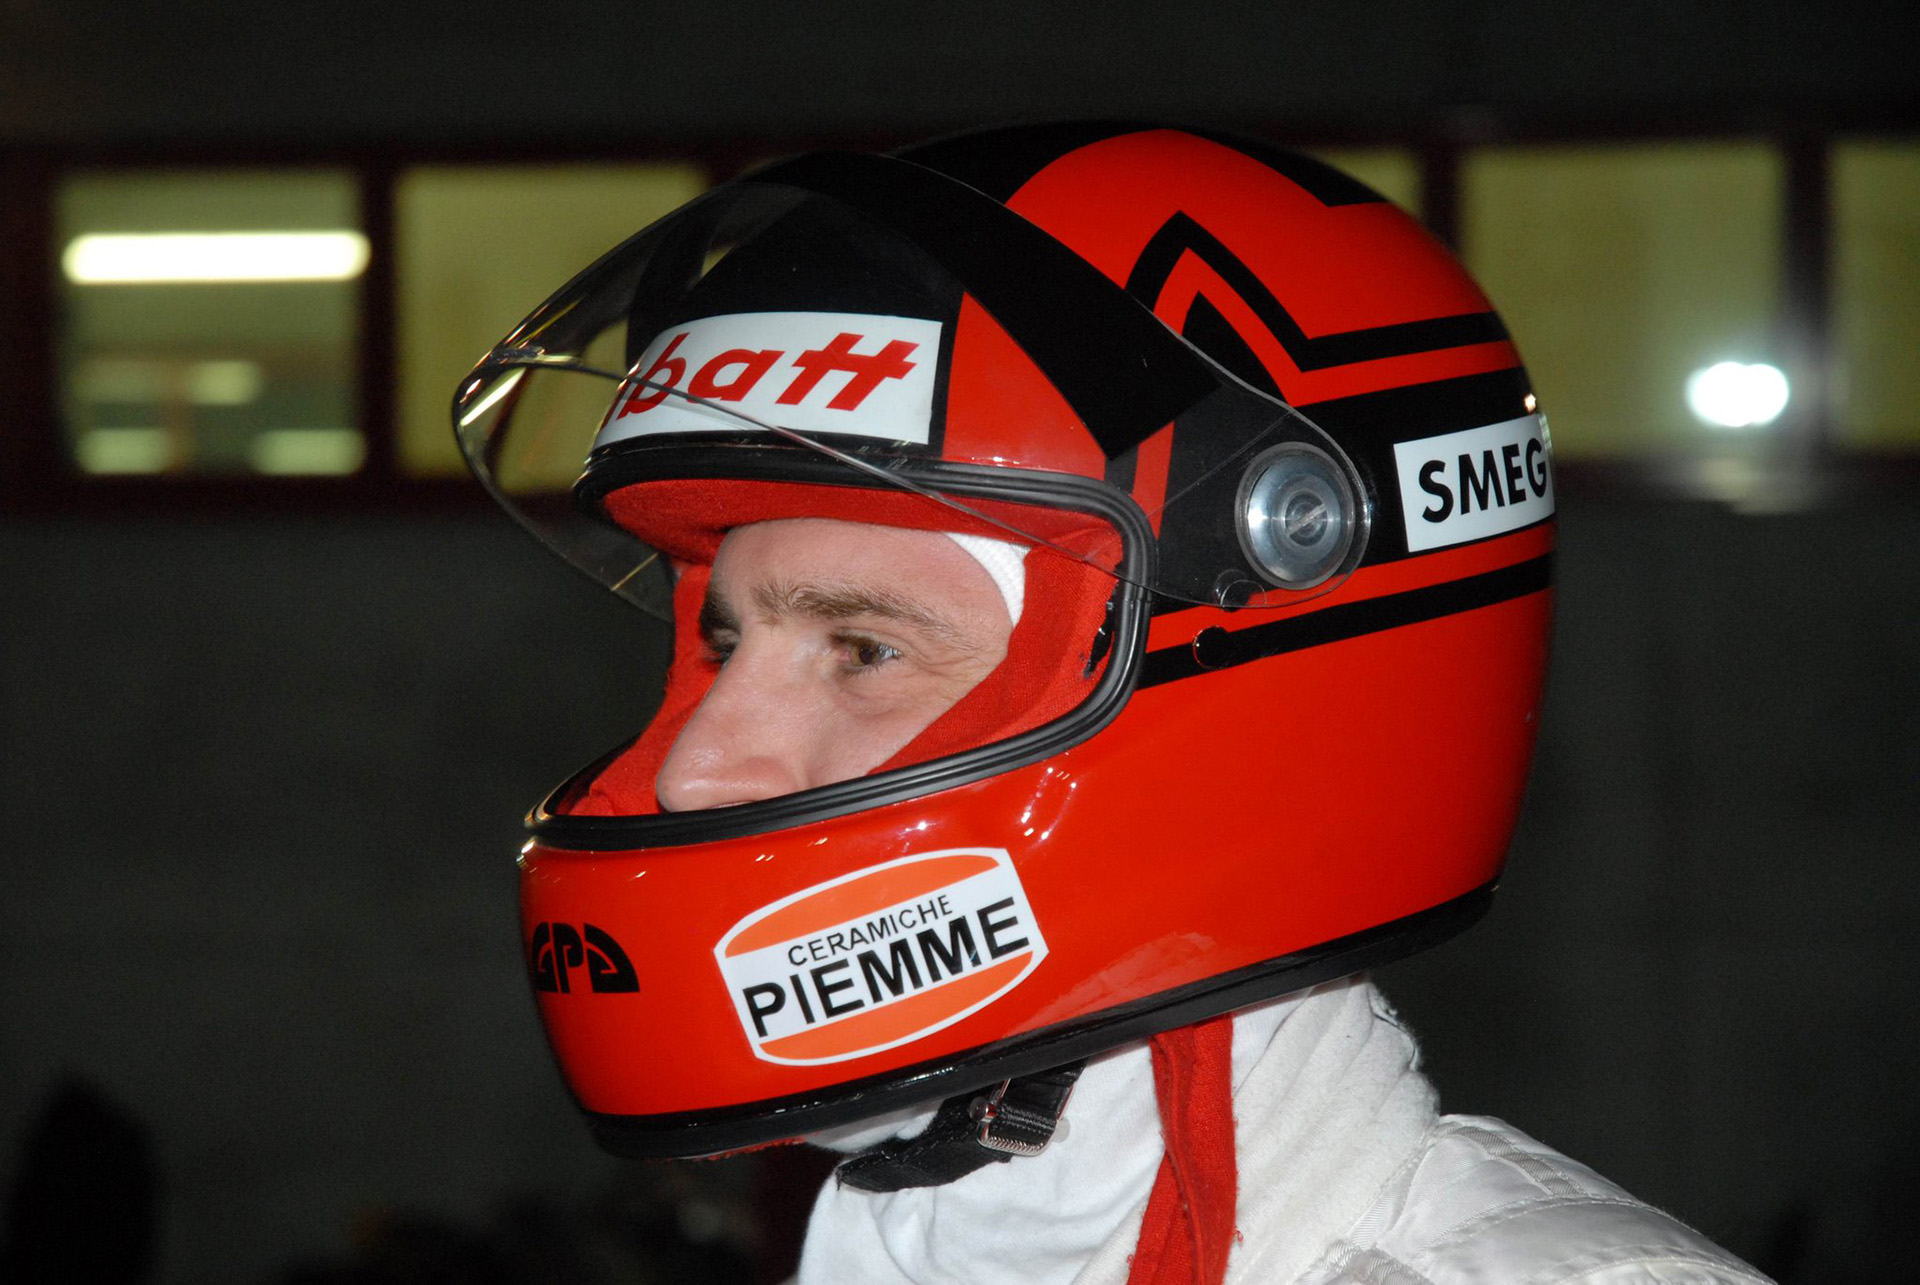 Sergio con una réplica del casco de su ídolo, Gilles Villeneuve. Fue previo a una carrera de karting (Facebook Sergio Bondi)